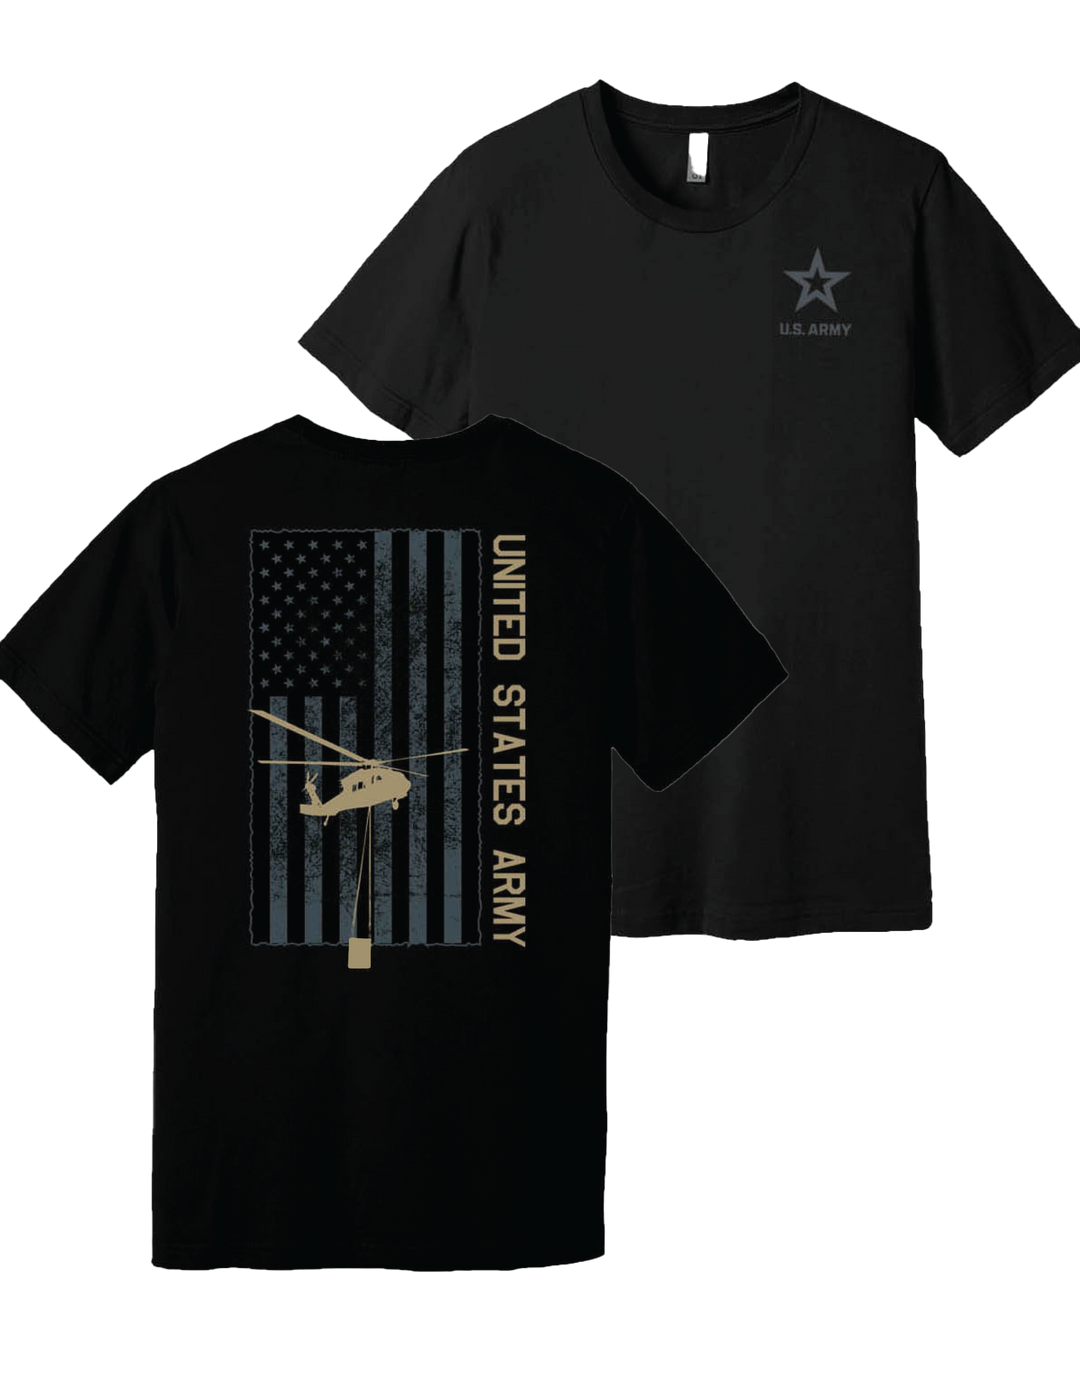 Army Blackhawk T-Shirt (Black)